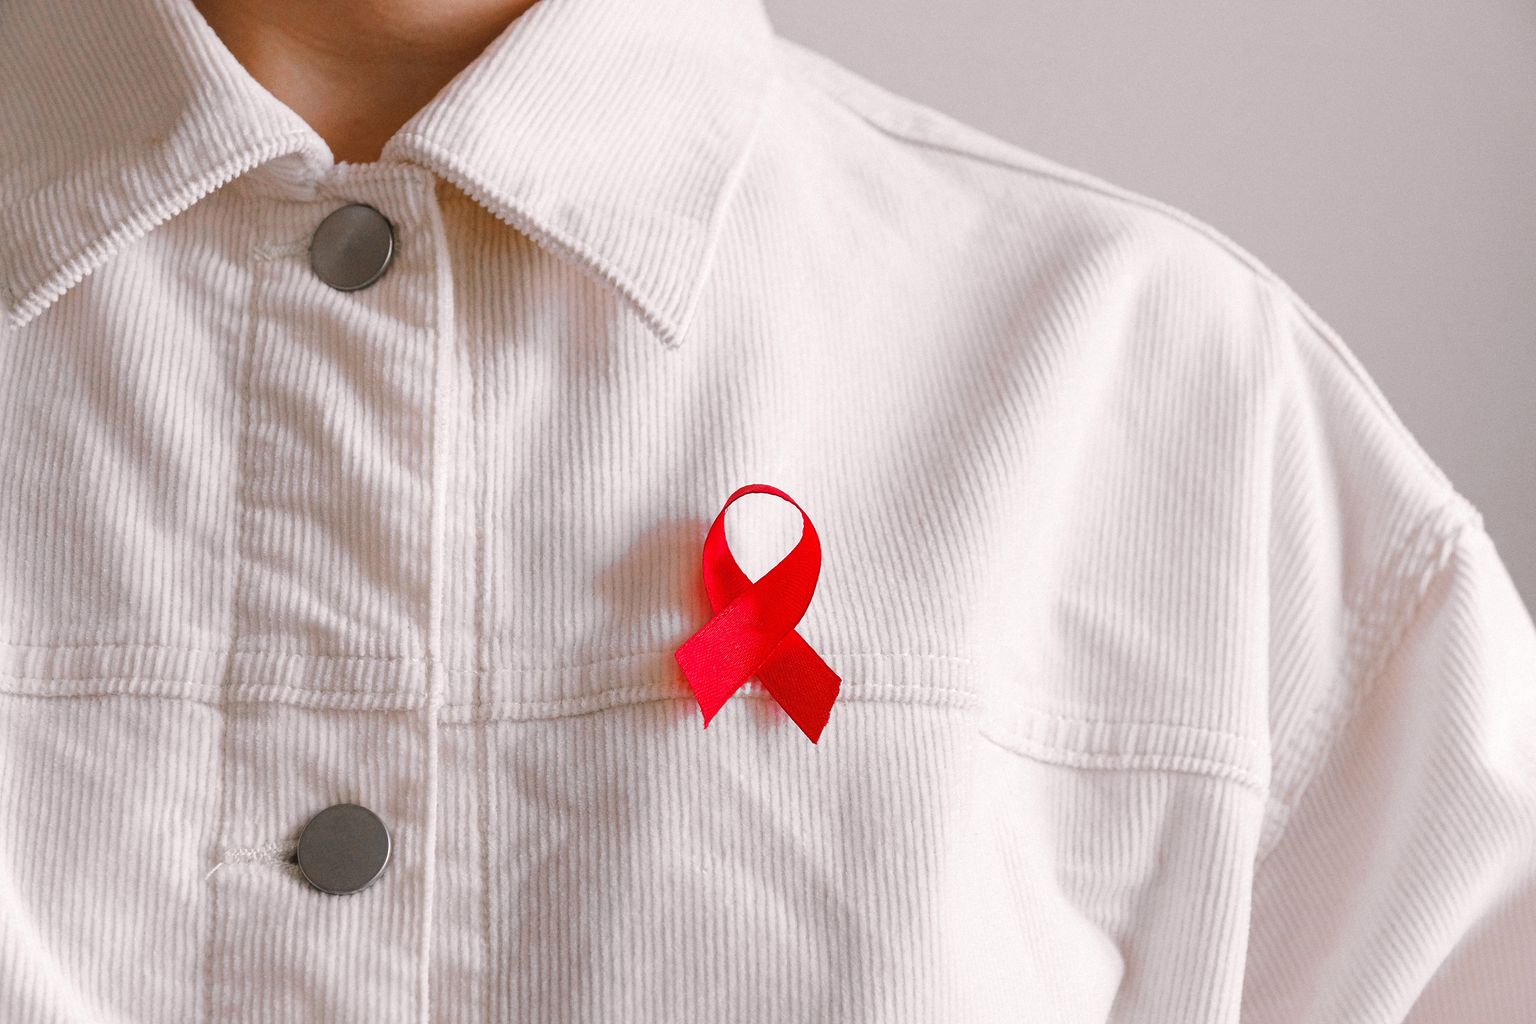 Una persona in camicia bianca indossa un Red Ribbon, simbolo di solidarietà con le persone infette da HIV e i malati di AIDS.